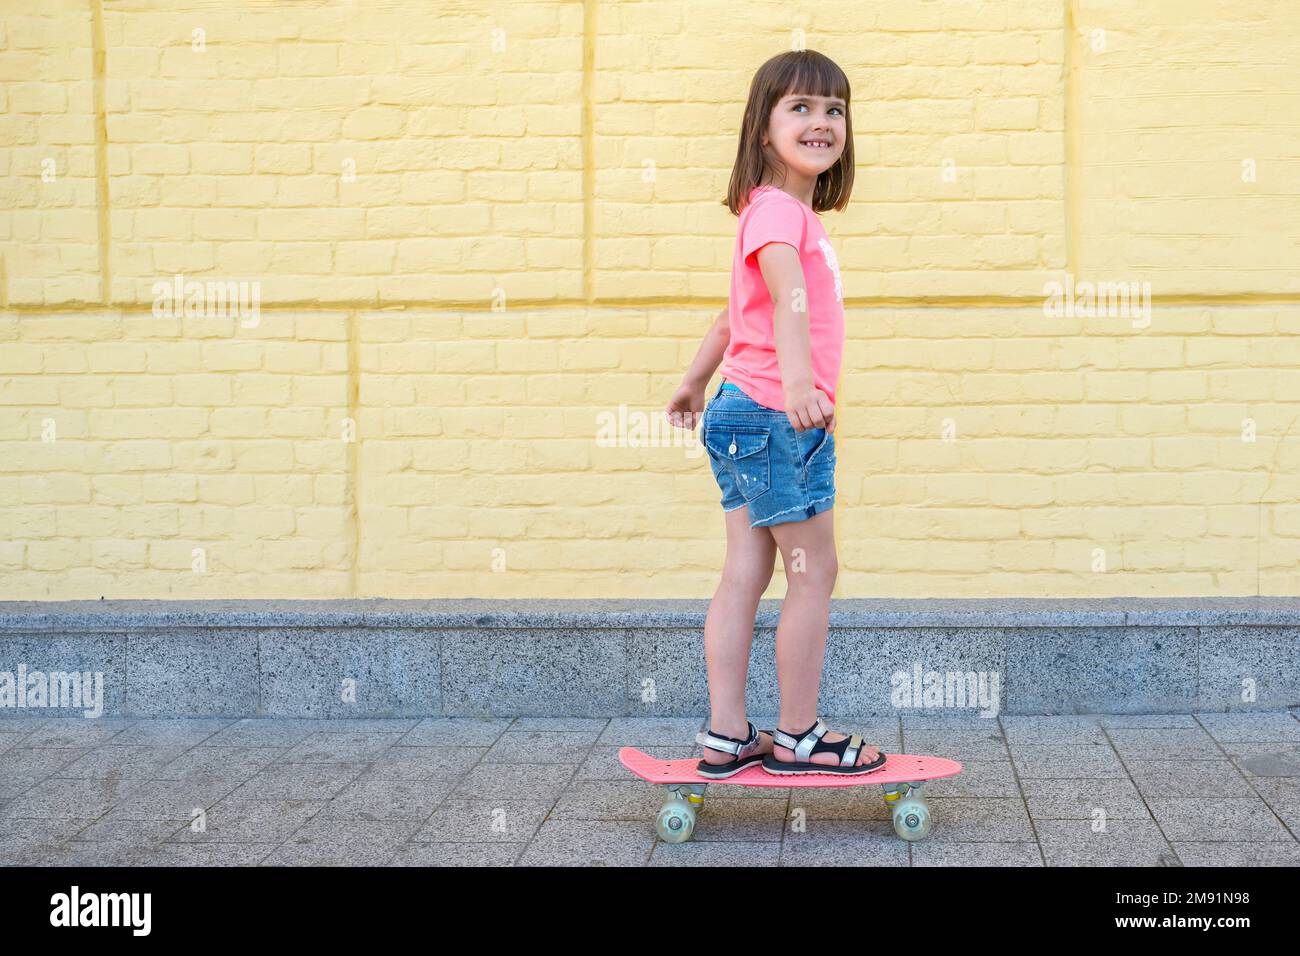 Una niña elegante está patinando en el fondo de la pared amarilla. Estilo de vida deportivo Foto de stock